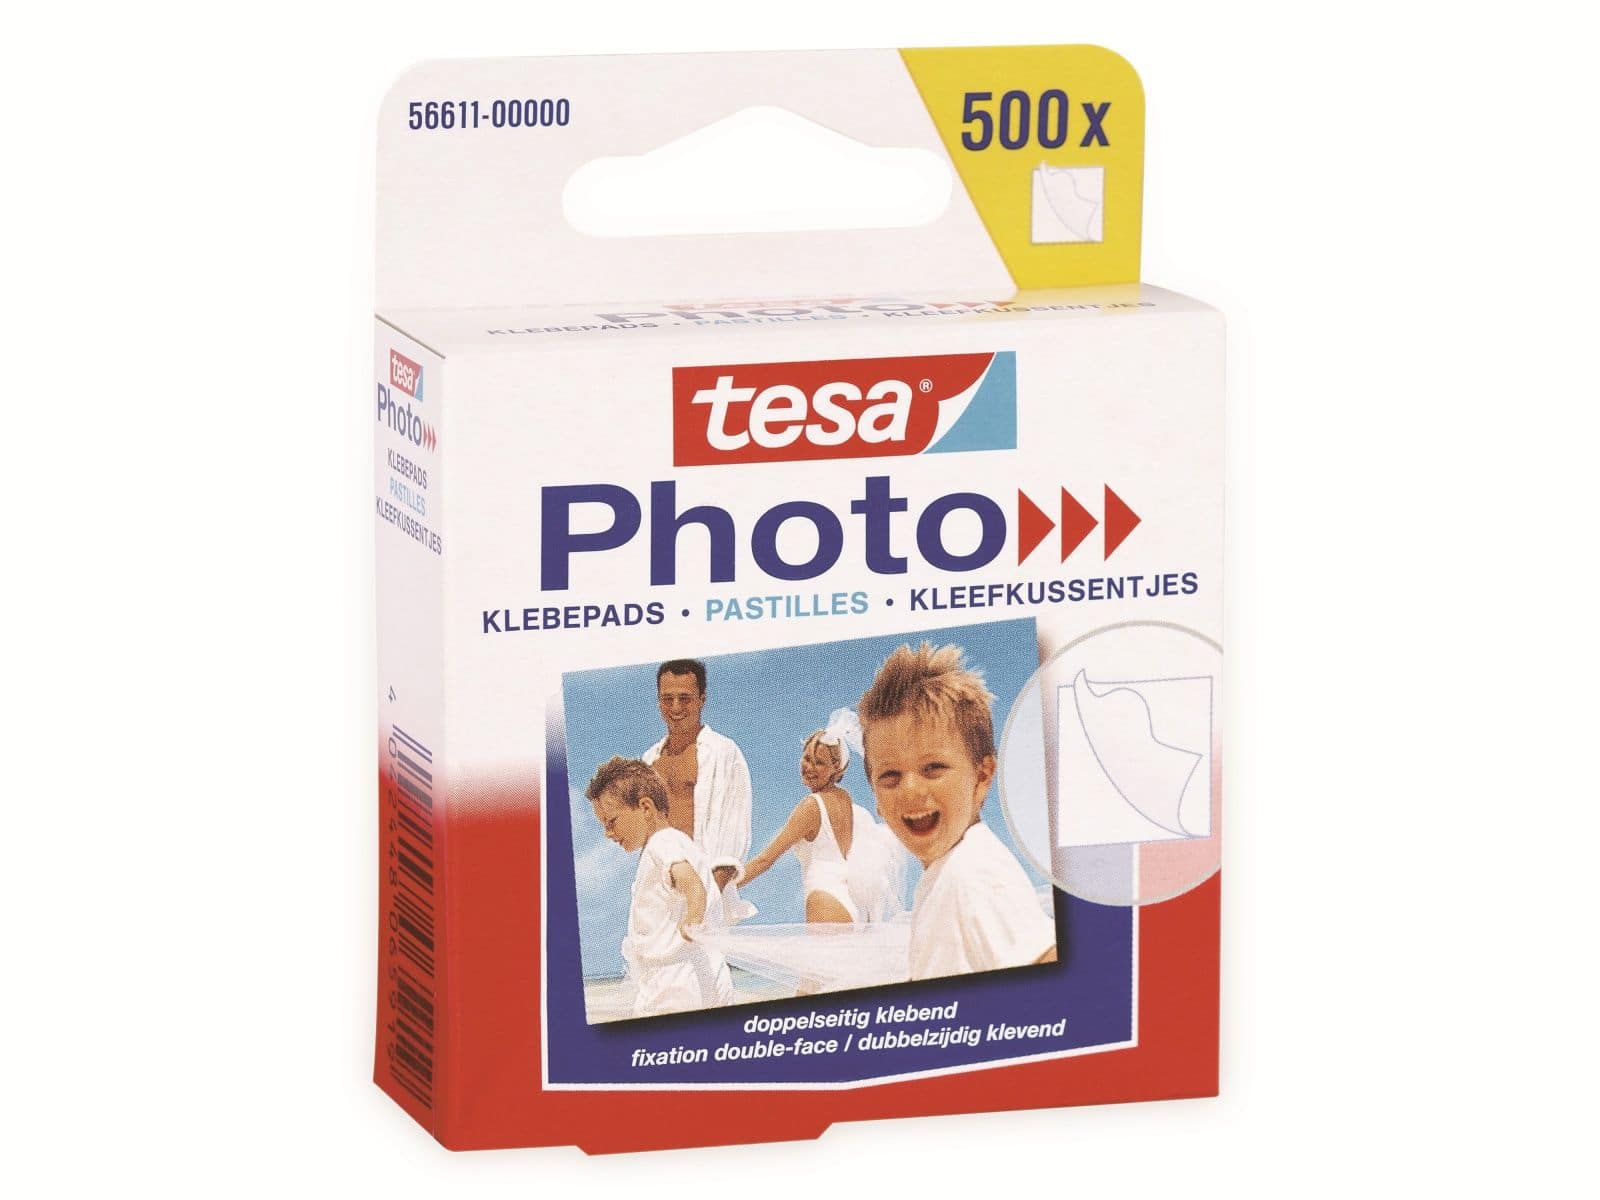 TESA Photo® Klebepads, 500 Stück, Big Pack, 56611-00000-00 von Tesa